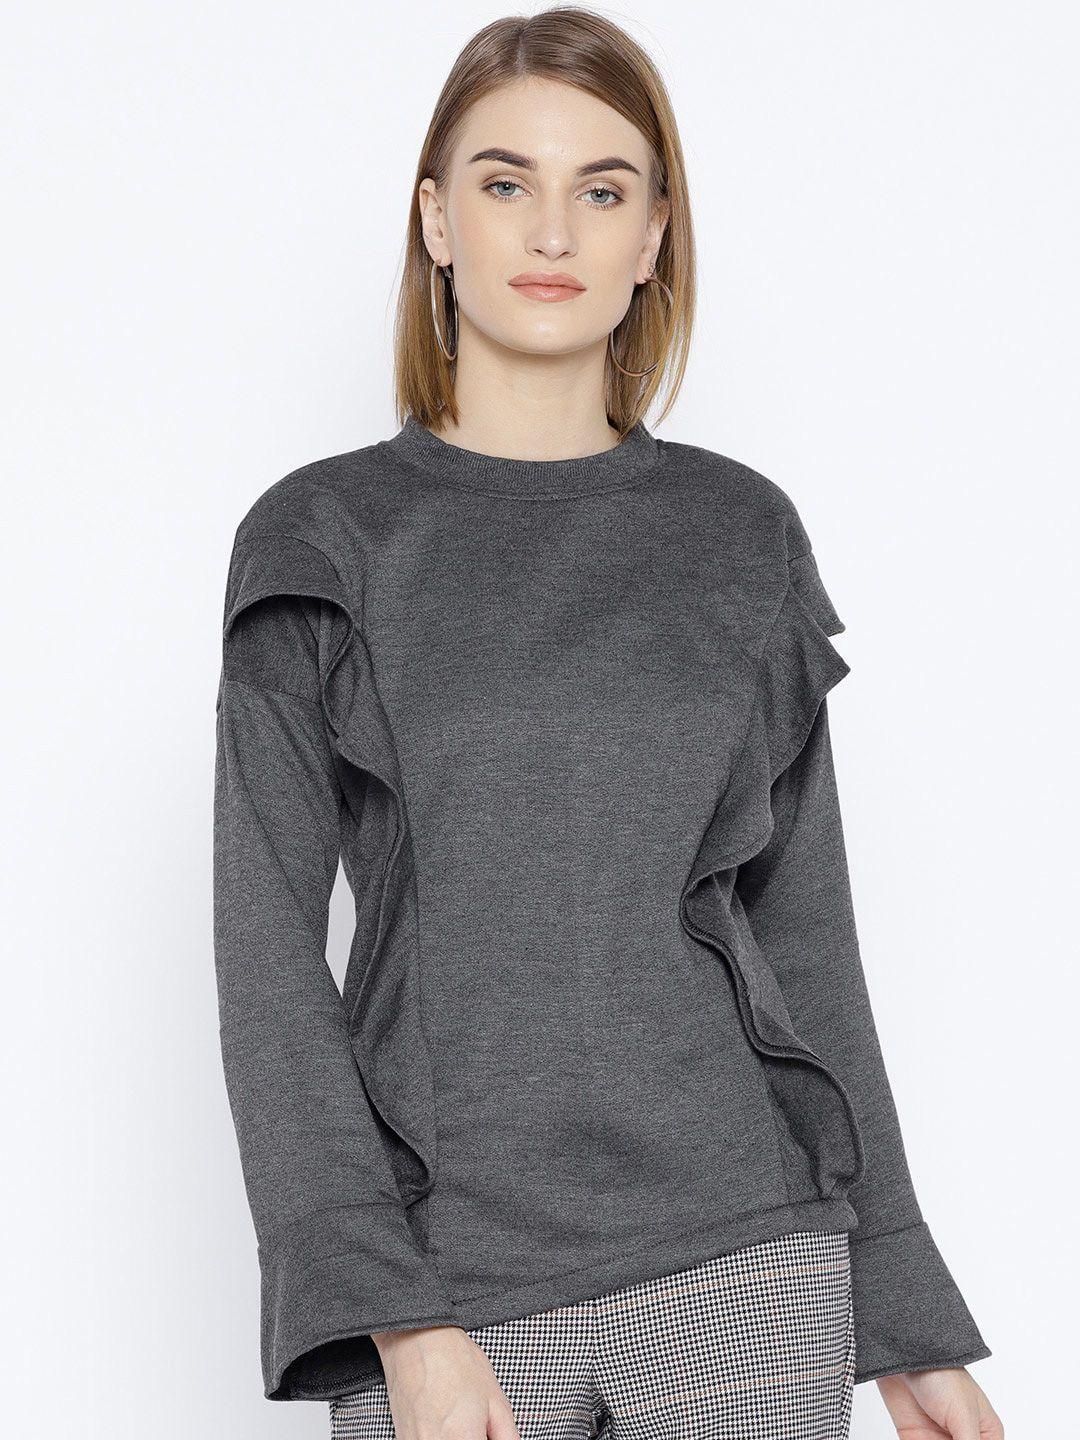 baesd-women-charcoal-sweatshirt